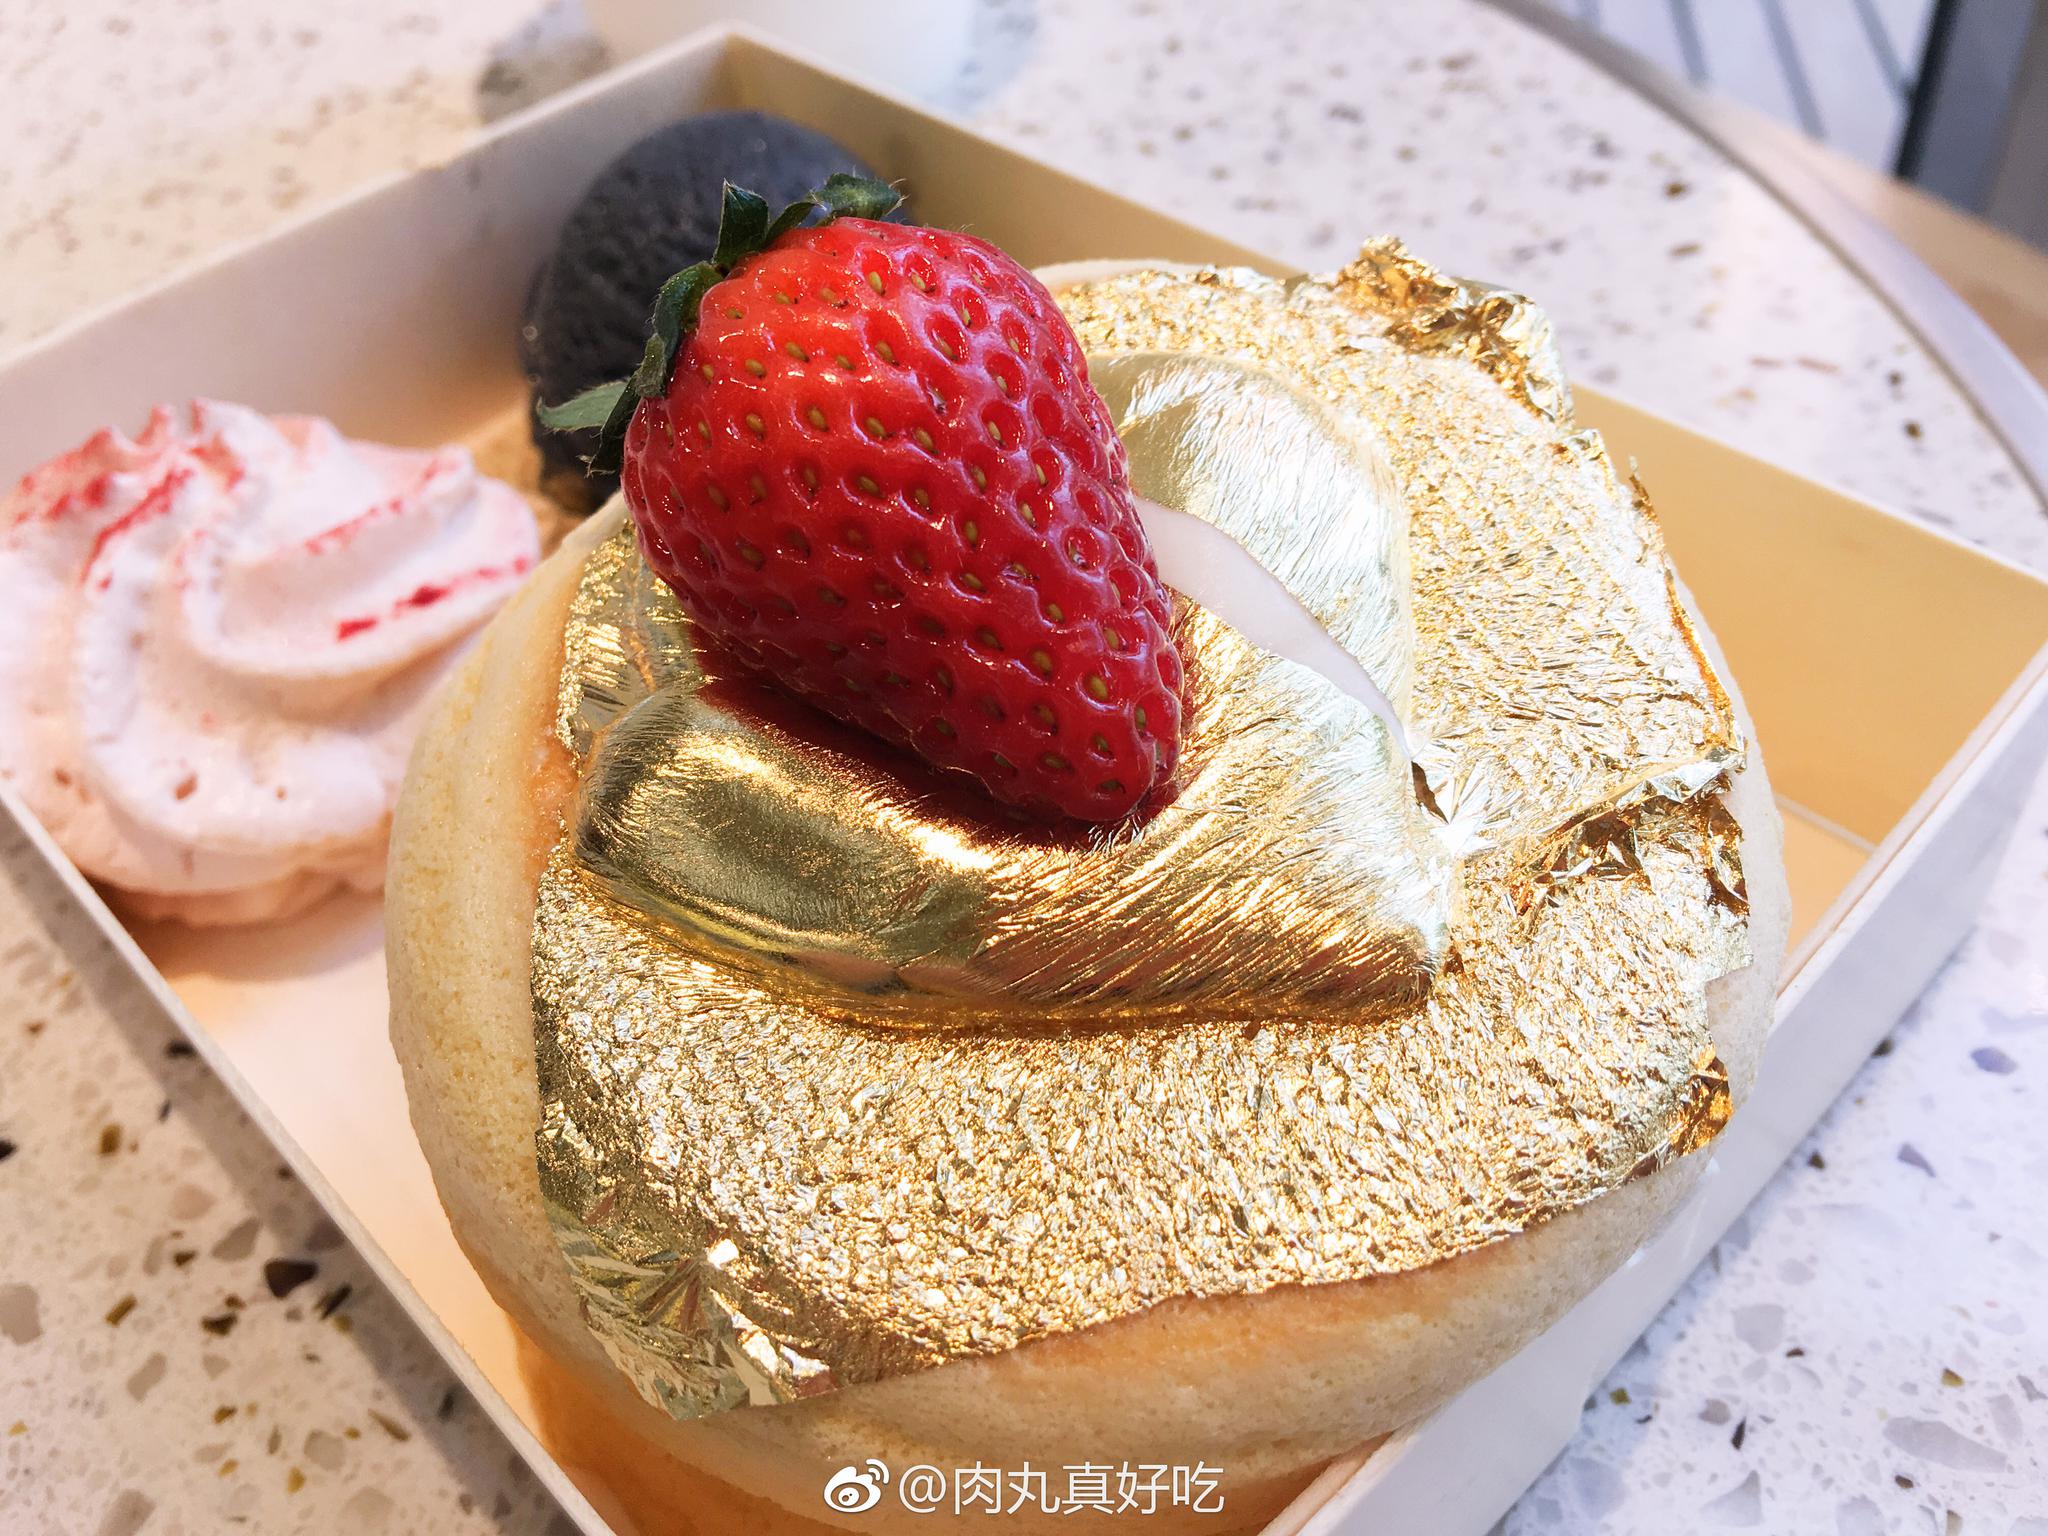 啊啊啊，我大南京第一网红店汴京茶寮现在也有舒芙蕾松饼啦!